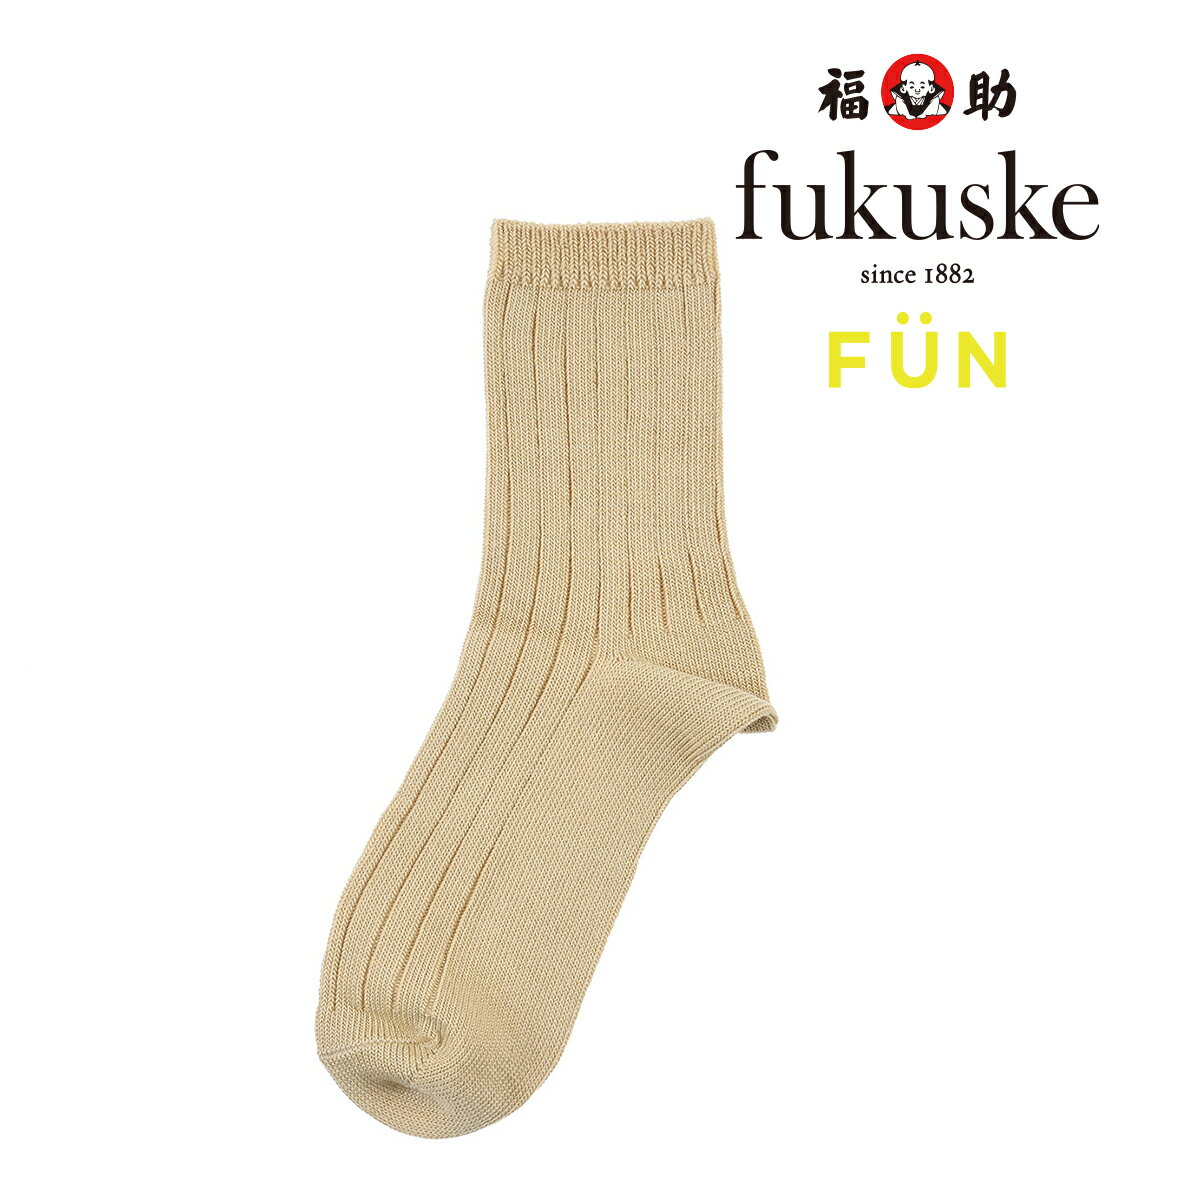 靴下 レディース fukuske FUN (フクスケファン) OKINIIRO Dull Nuance リブ クルー丈 3162-84l婦人 女性 フクスケ fukuske福助 公式